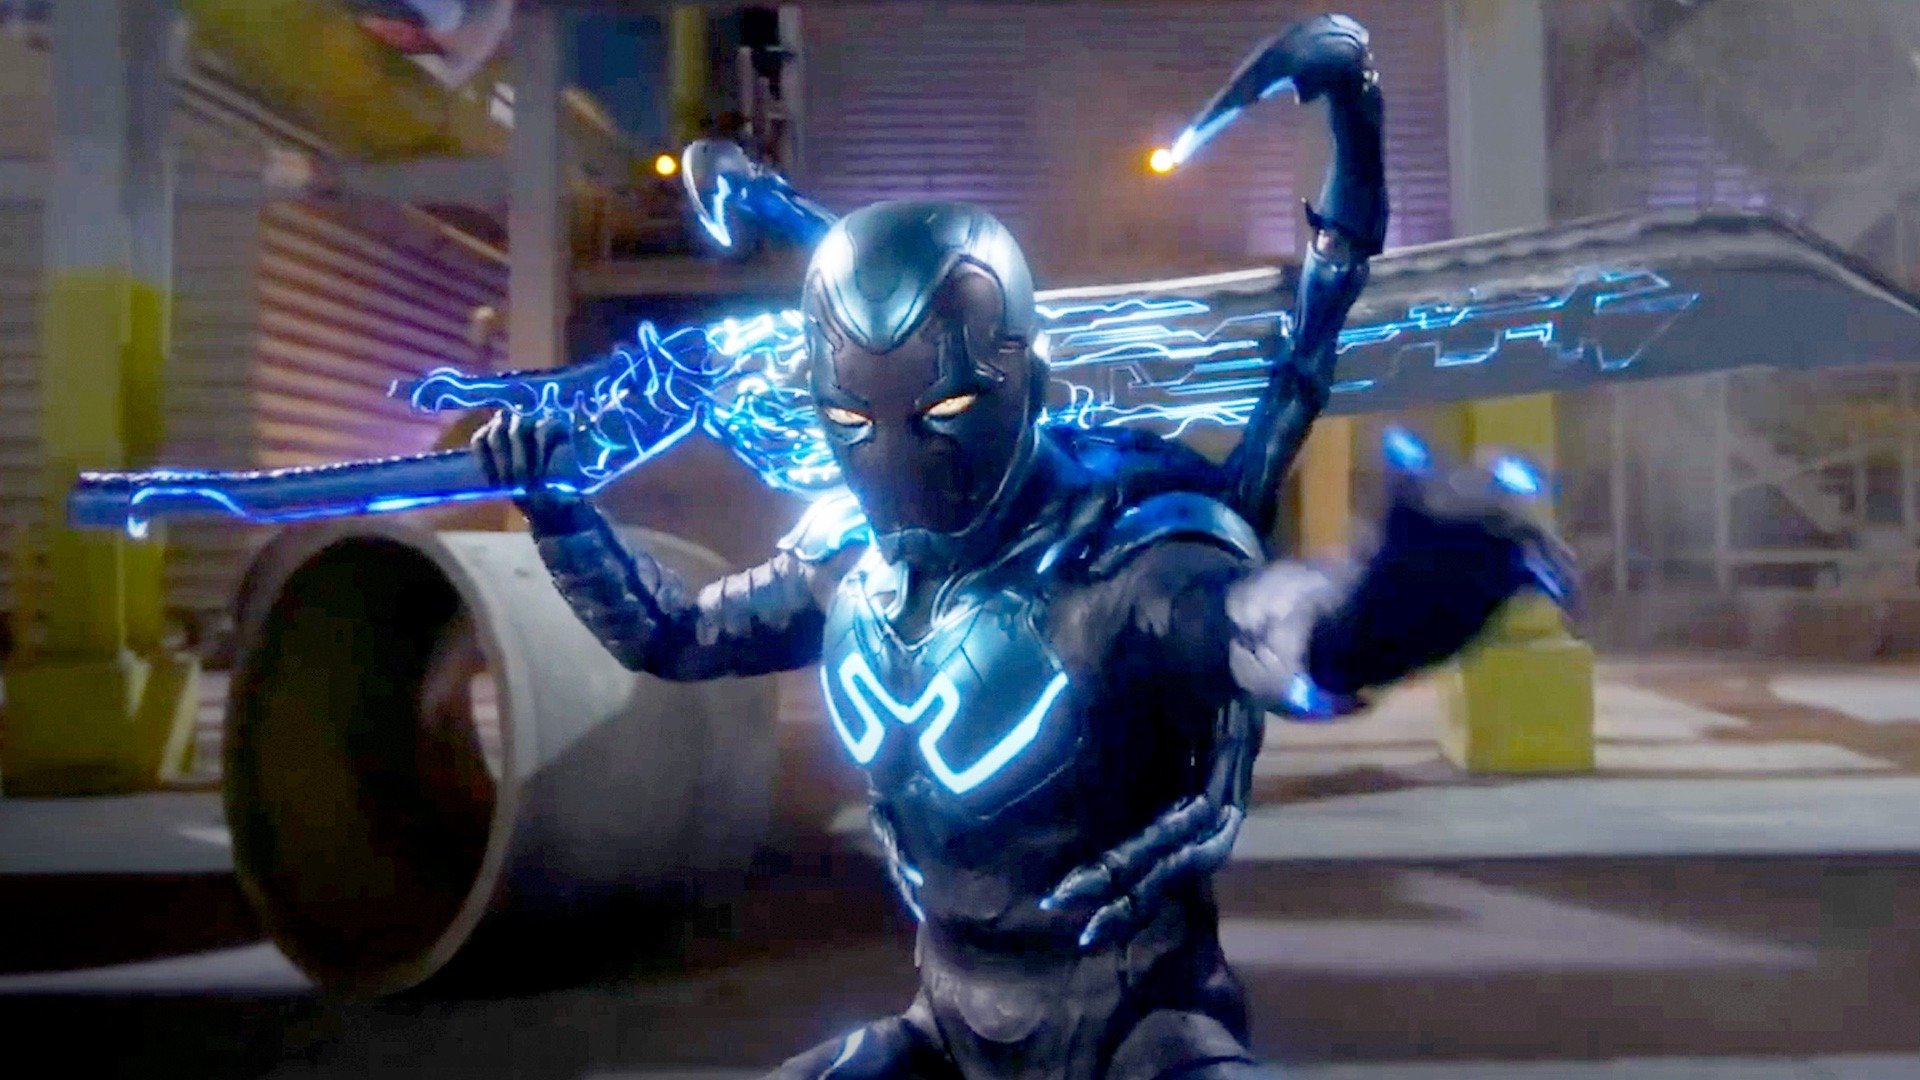 Xolo Maridueña Cast as Upcoming Superhero 'Blue Beetle